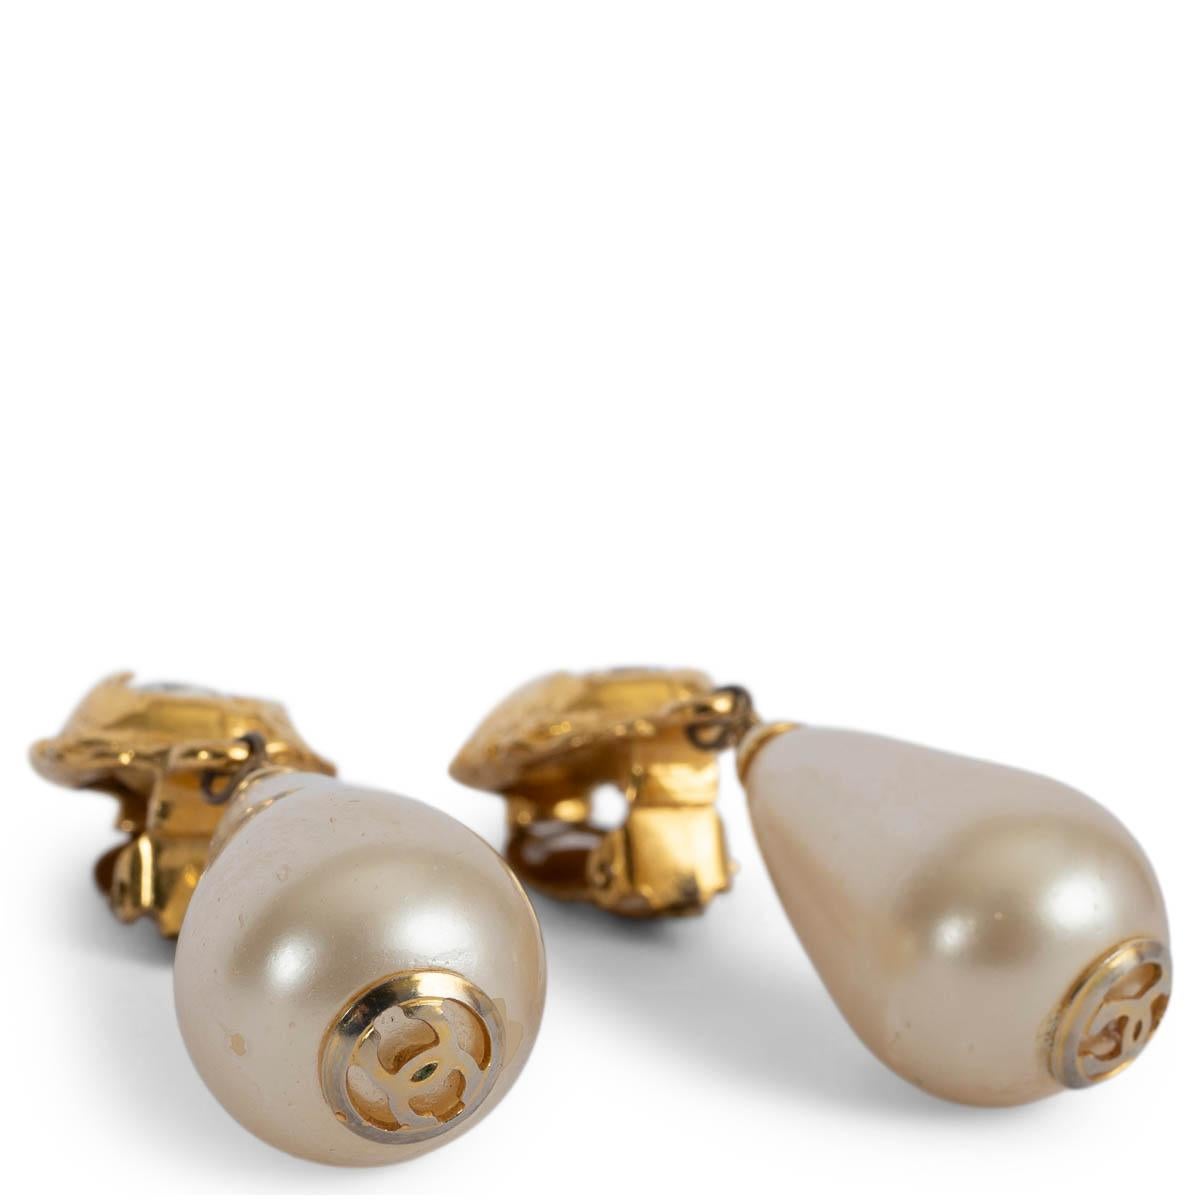 100% authentische Chanel Vintage Tropfen faux Perle Clip-on Ohrringe mit einem klobigen Kristall und goldfarbenen Metall verziert. Wurden getragen und zeigen einige Verschleiß an der faux Perlen. Insgesamt in sehr gutem Zustand. Kommt mit Box und